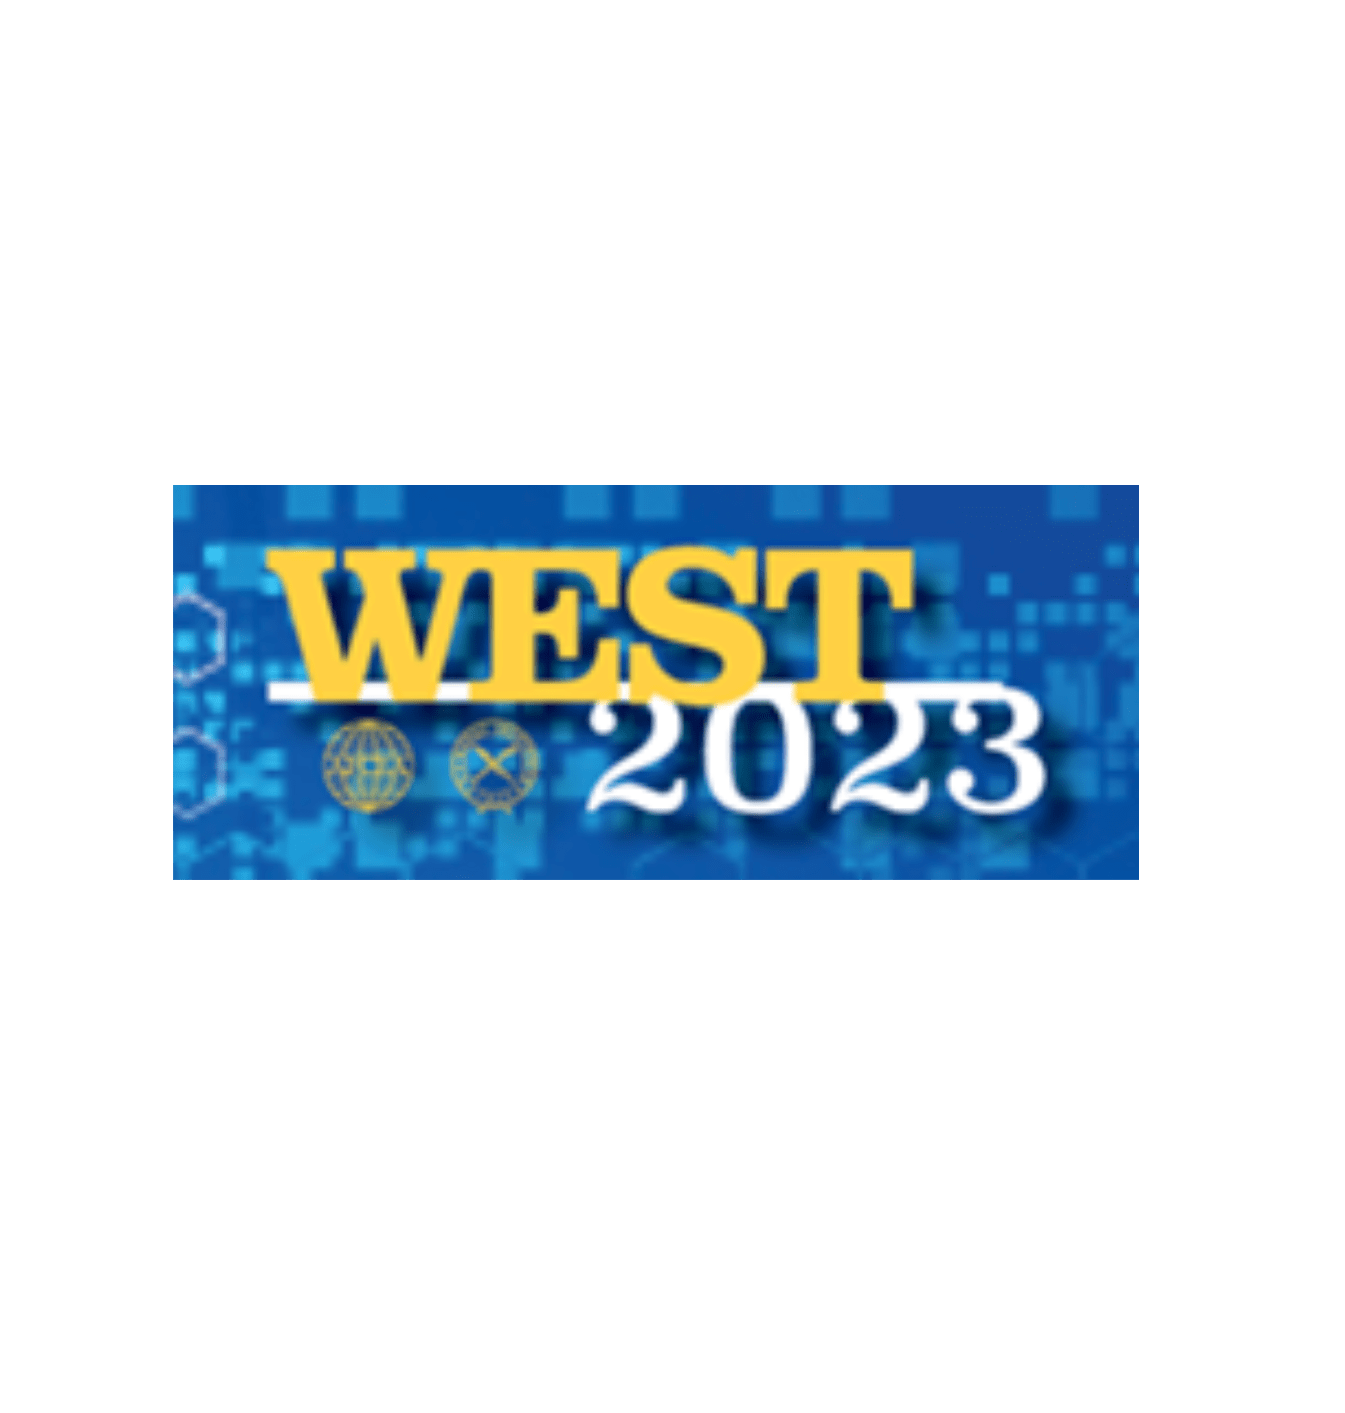 AFCEA West 2023